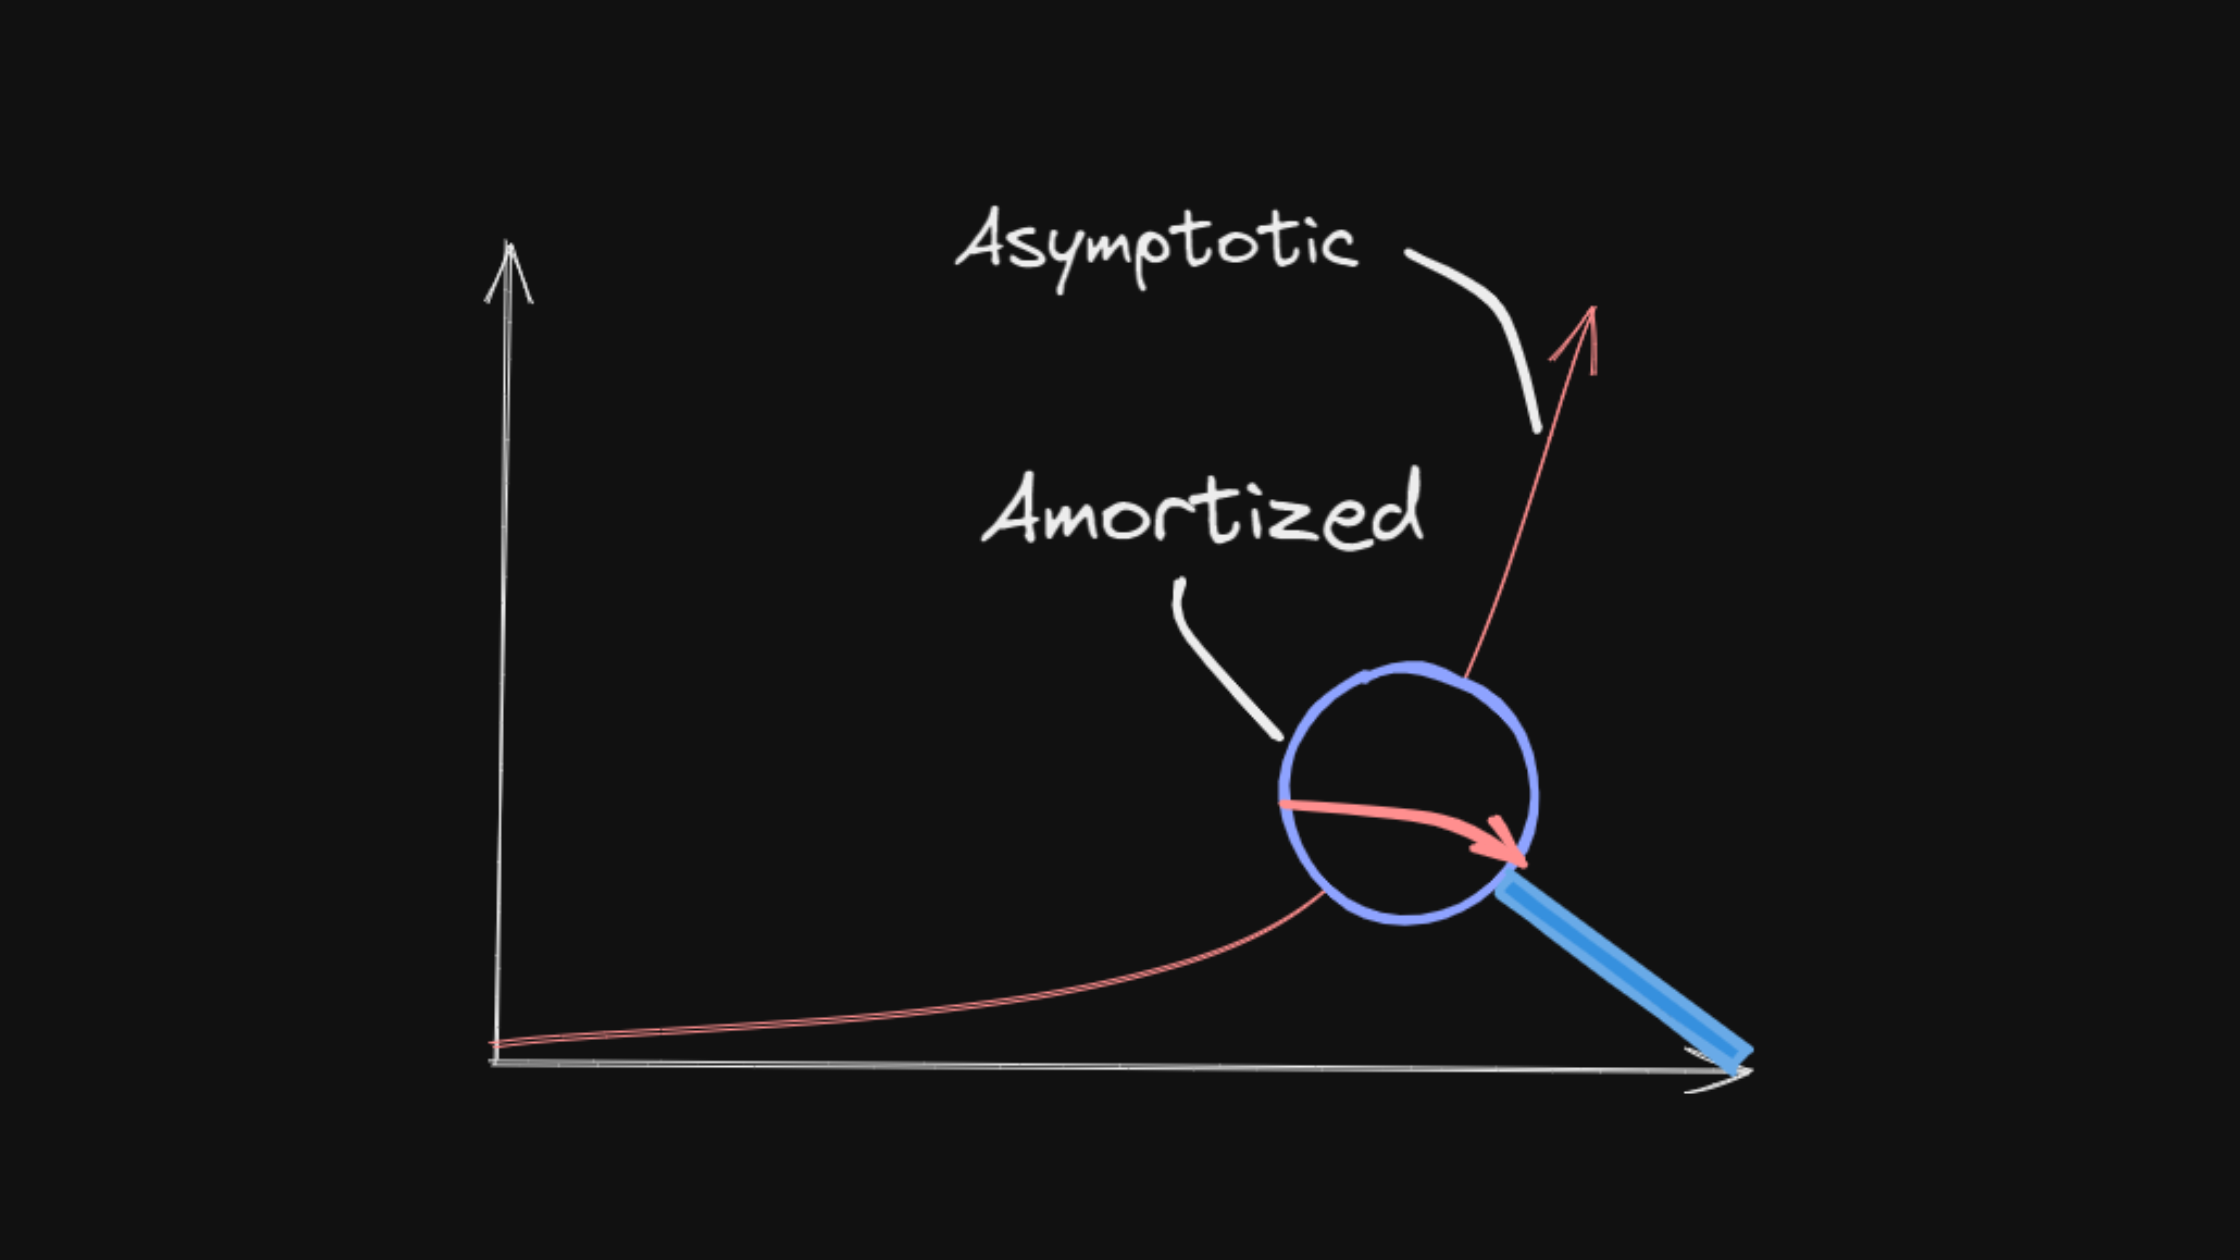 Amortized vs. Asymptotic